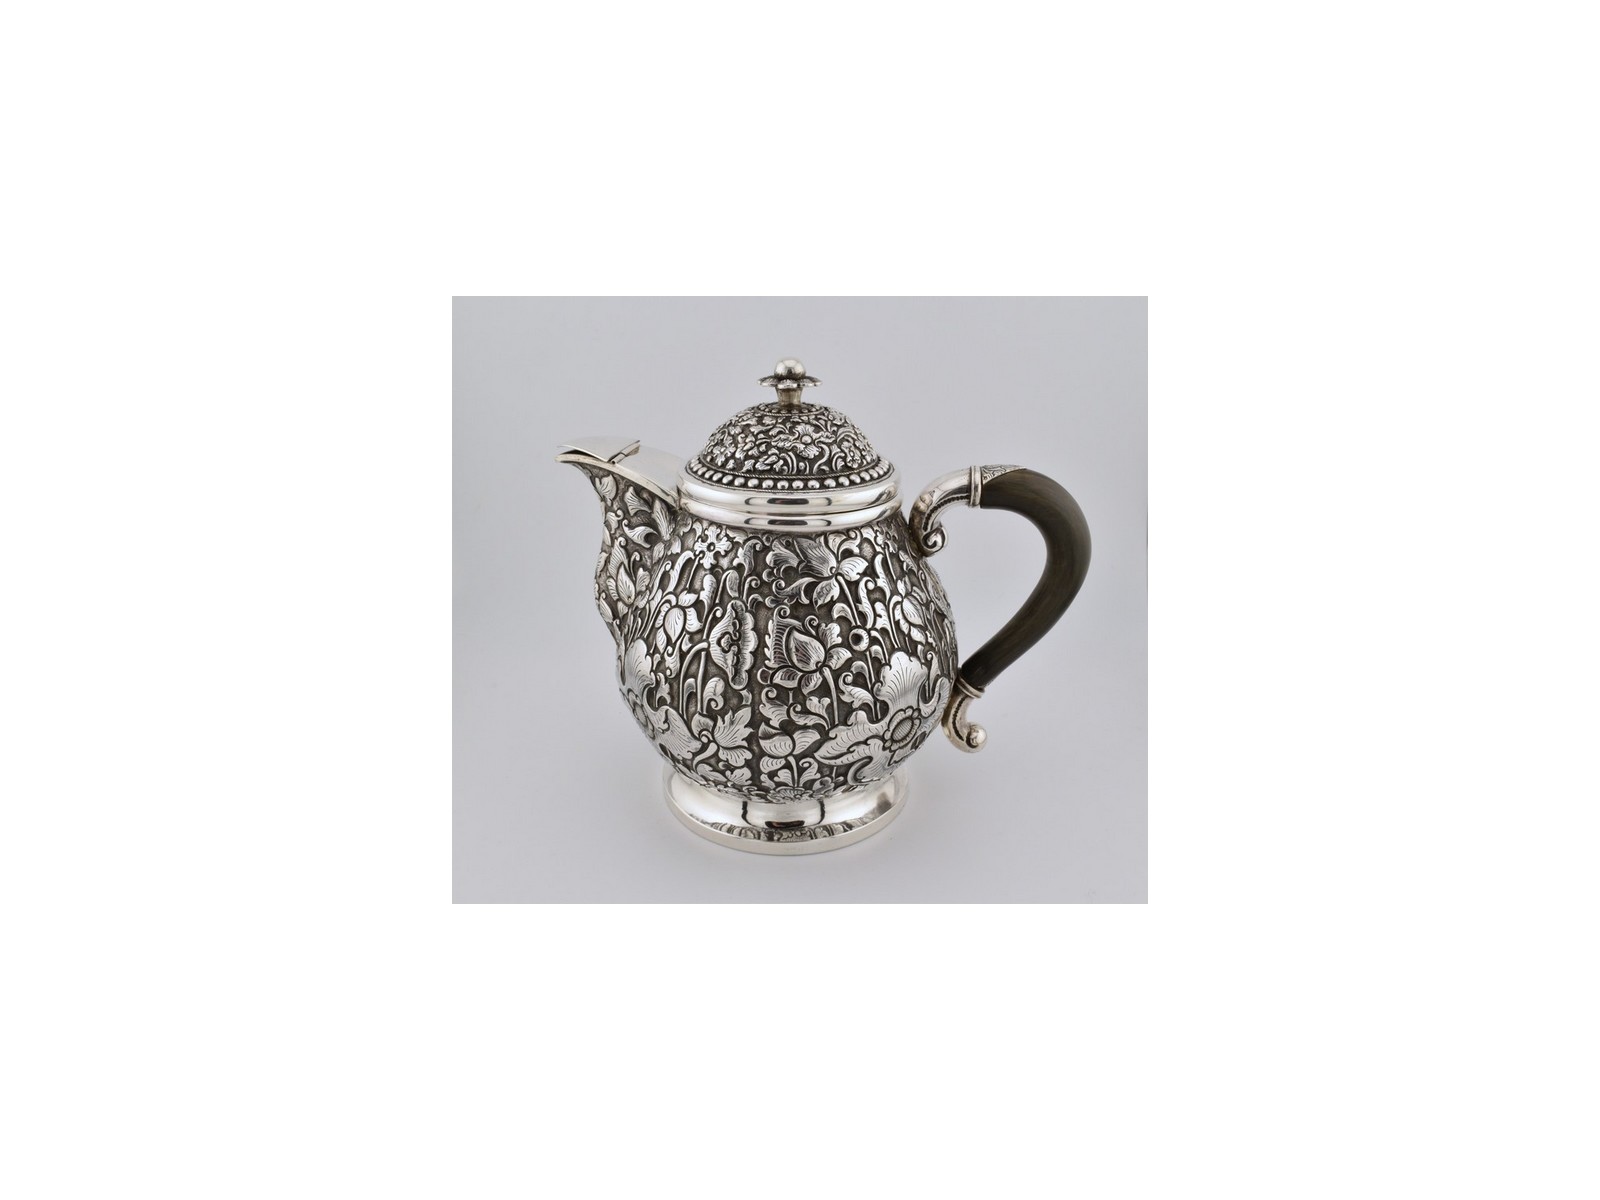 Antieke-koffiepot-zilver-Djokja-India-19e-eeuw-HZG836-Het-Wagenwiel-Antiek-1a